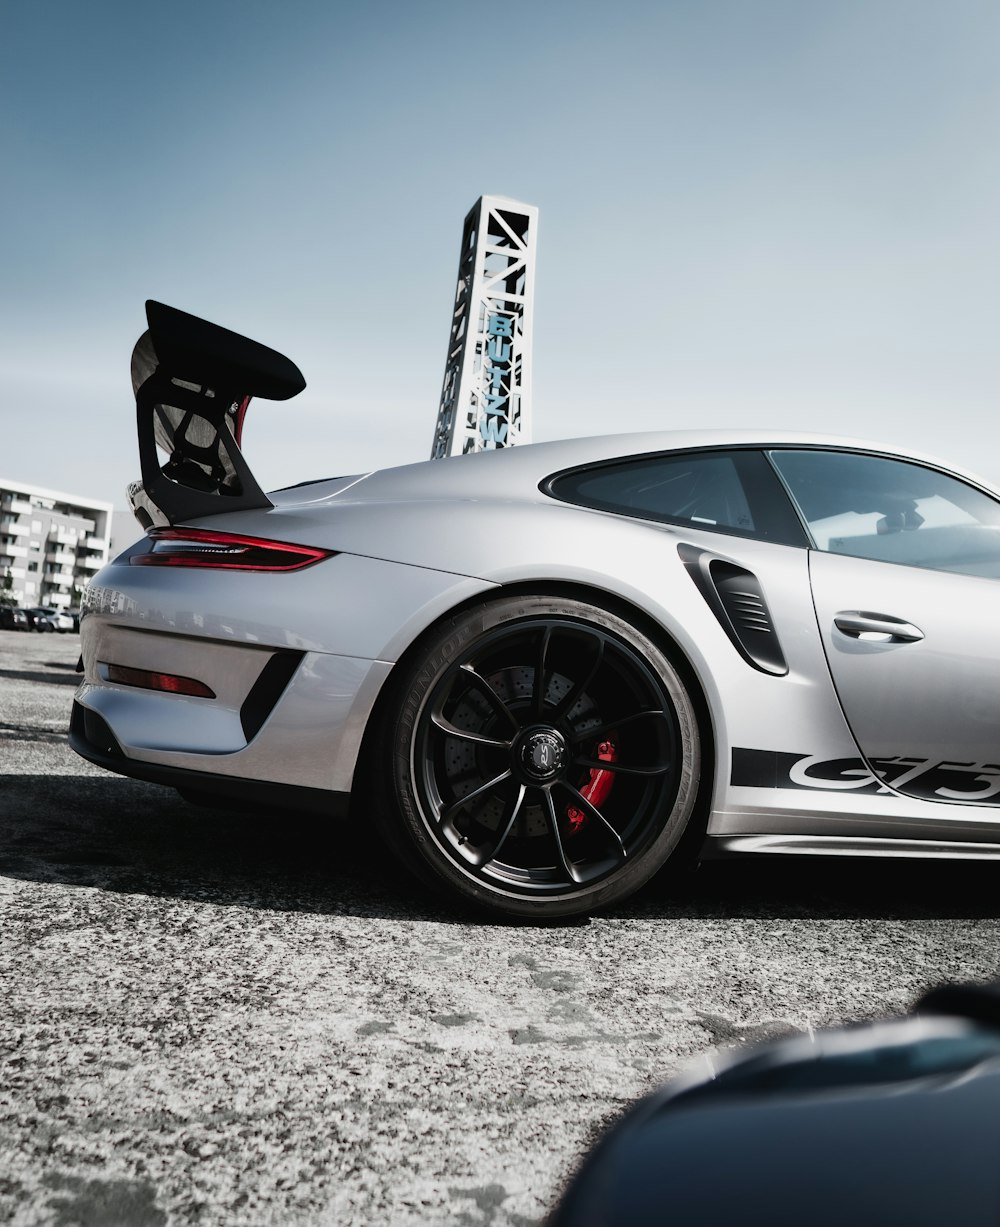 Porsche 911 blanche et noire garée sur une chaussée en béton gris pendant la journée